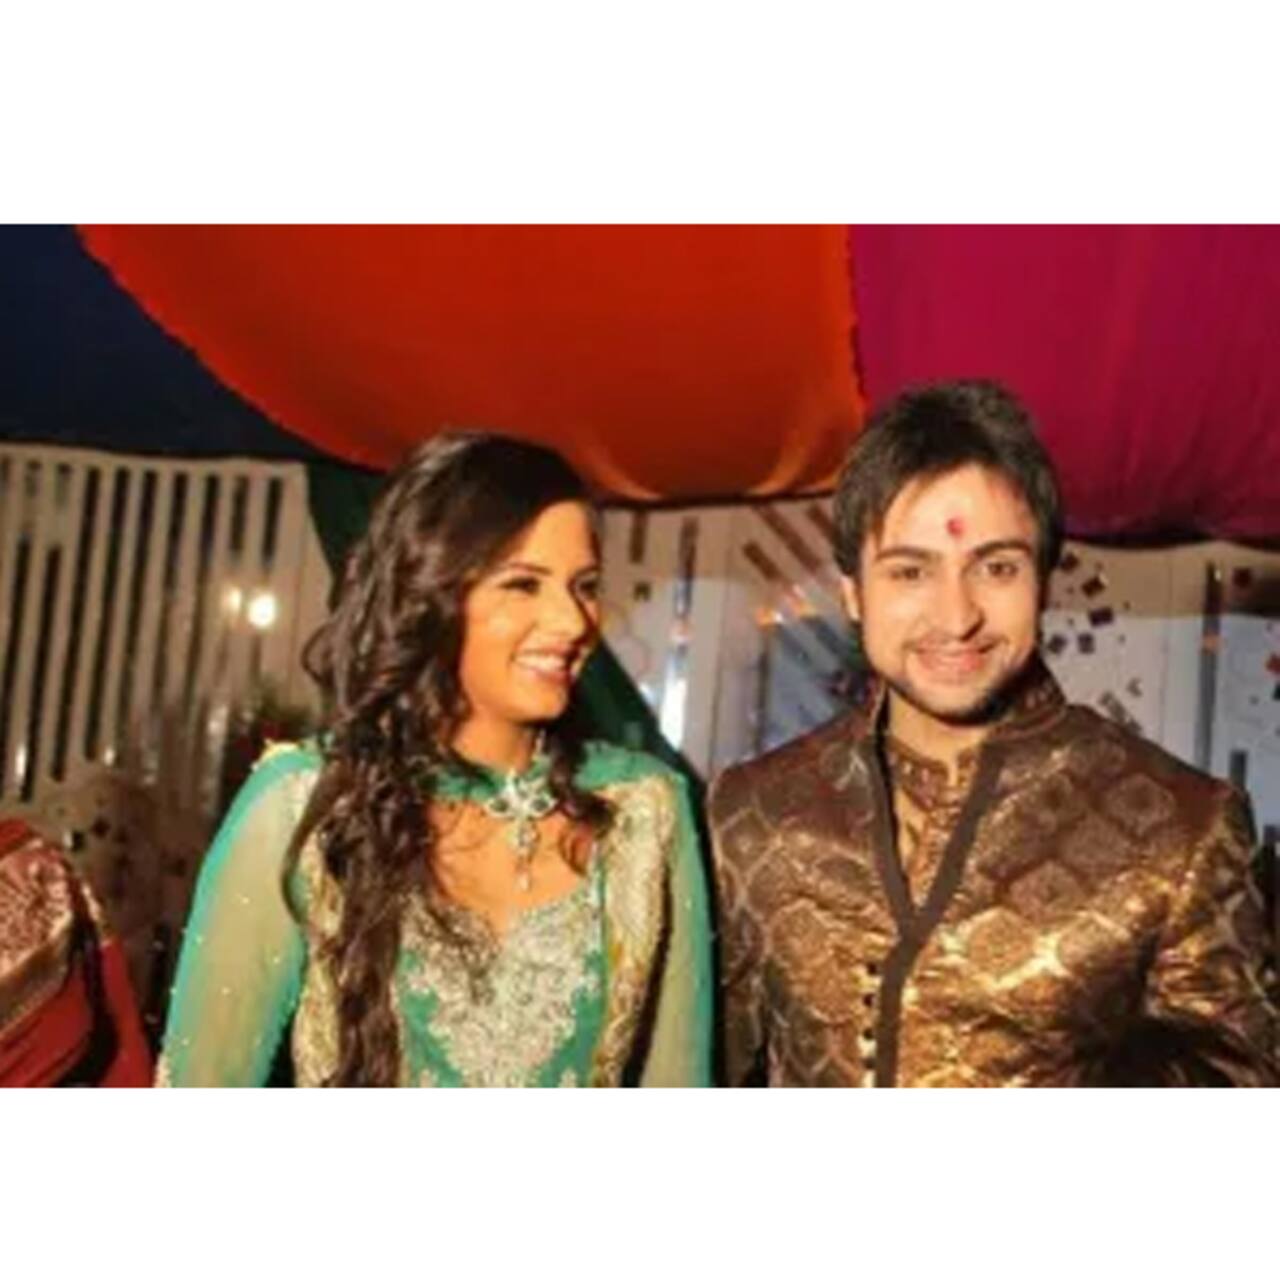 इस साल हुई थी शालीन भनोट (Shaleen Bhanot) और दलजीत कौर (Daljeet Kaur) की शादी